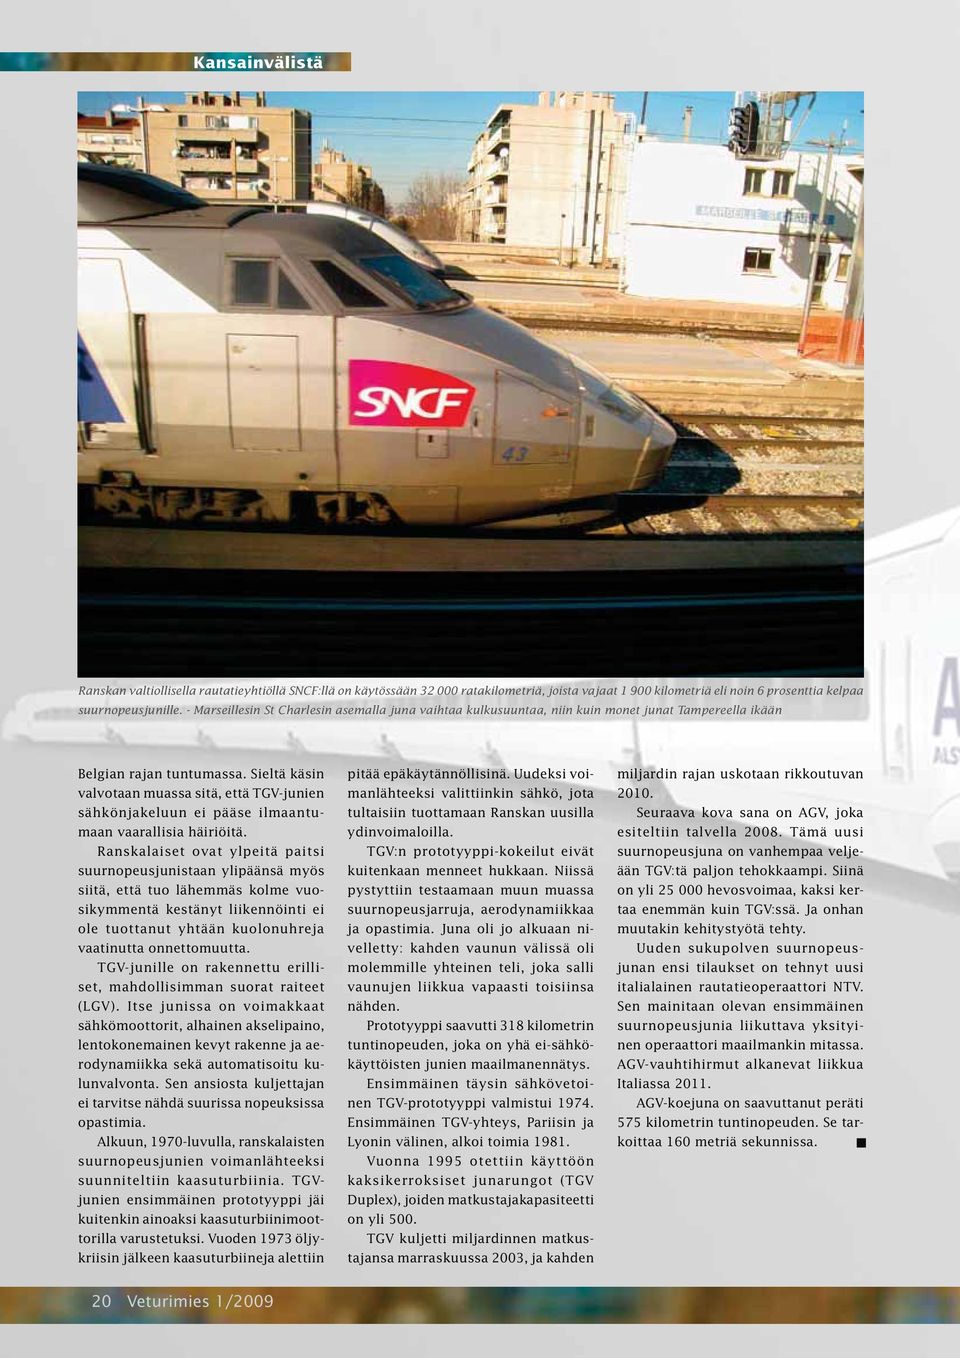 Sieltä käsin valvotaan muassa sitä, että TGV-junien sähkönjakeluun ei pääse ilmaantumaan vaarallisia häiriöitä.